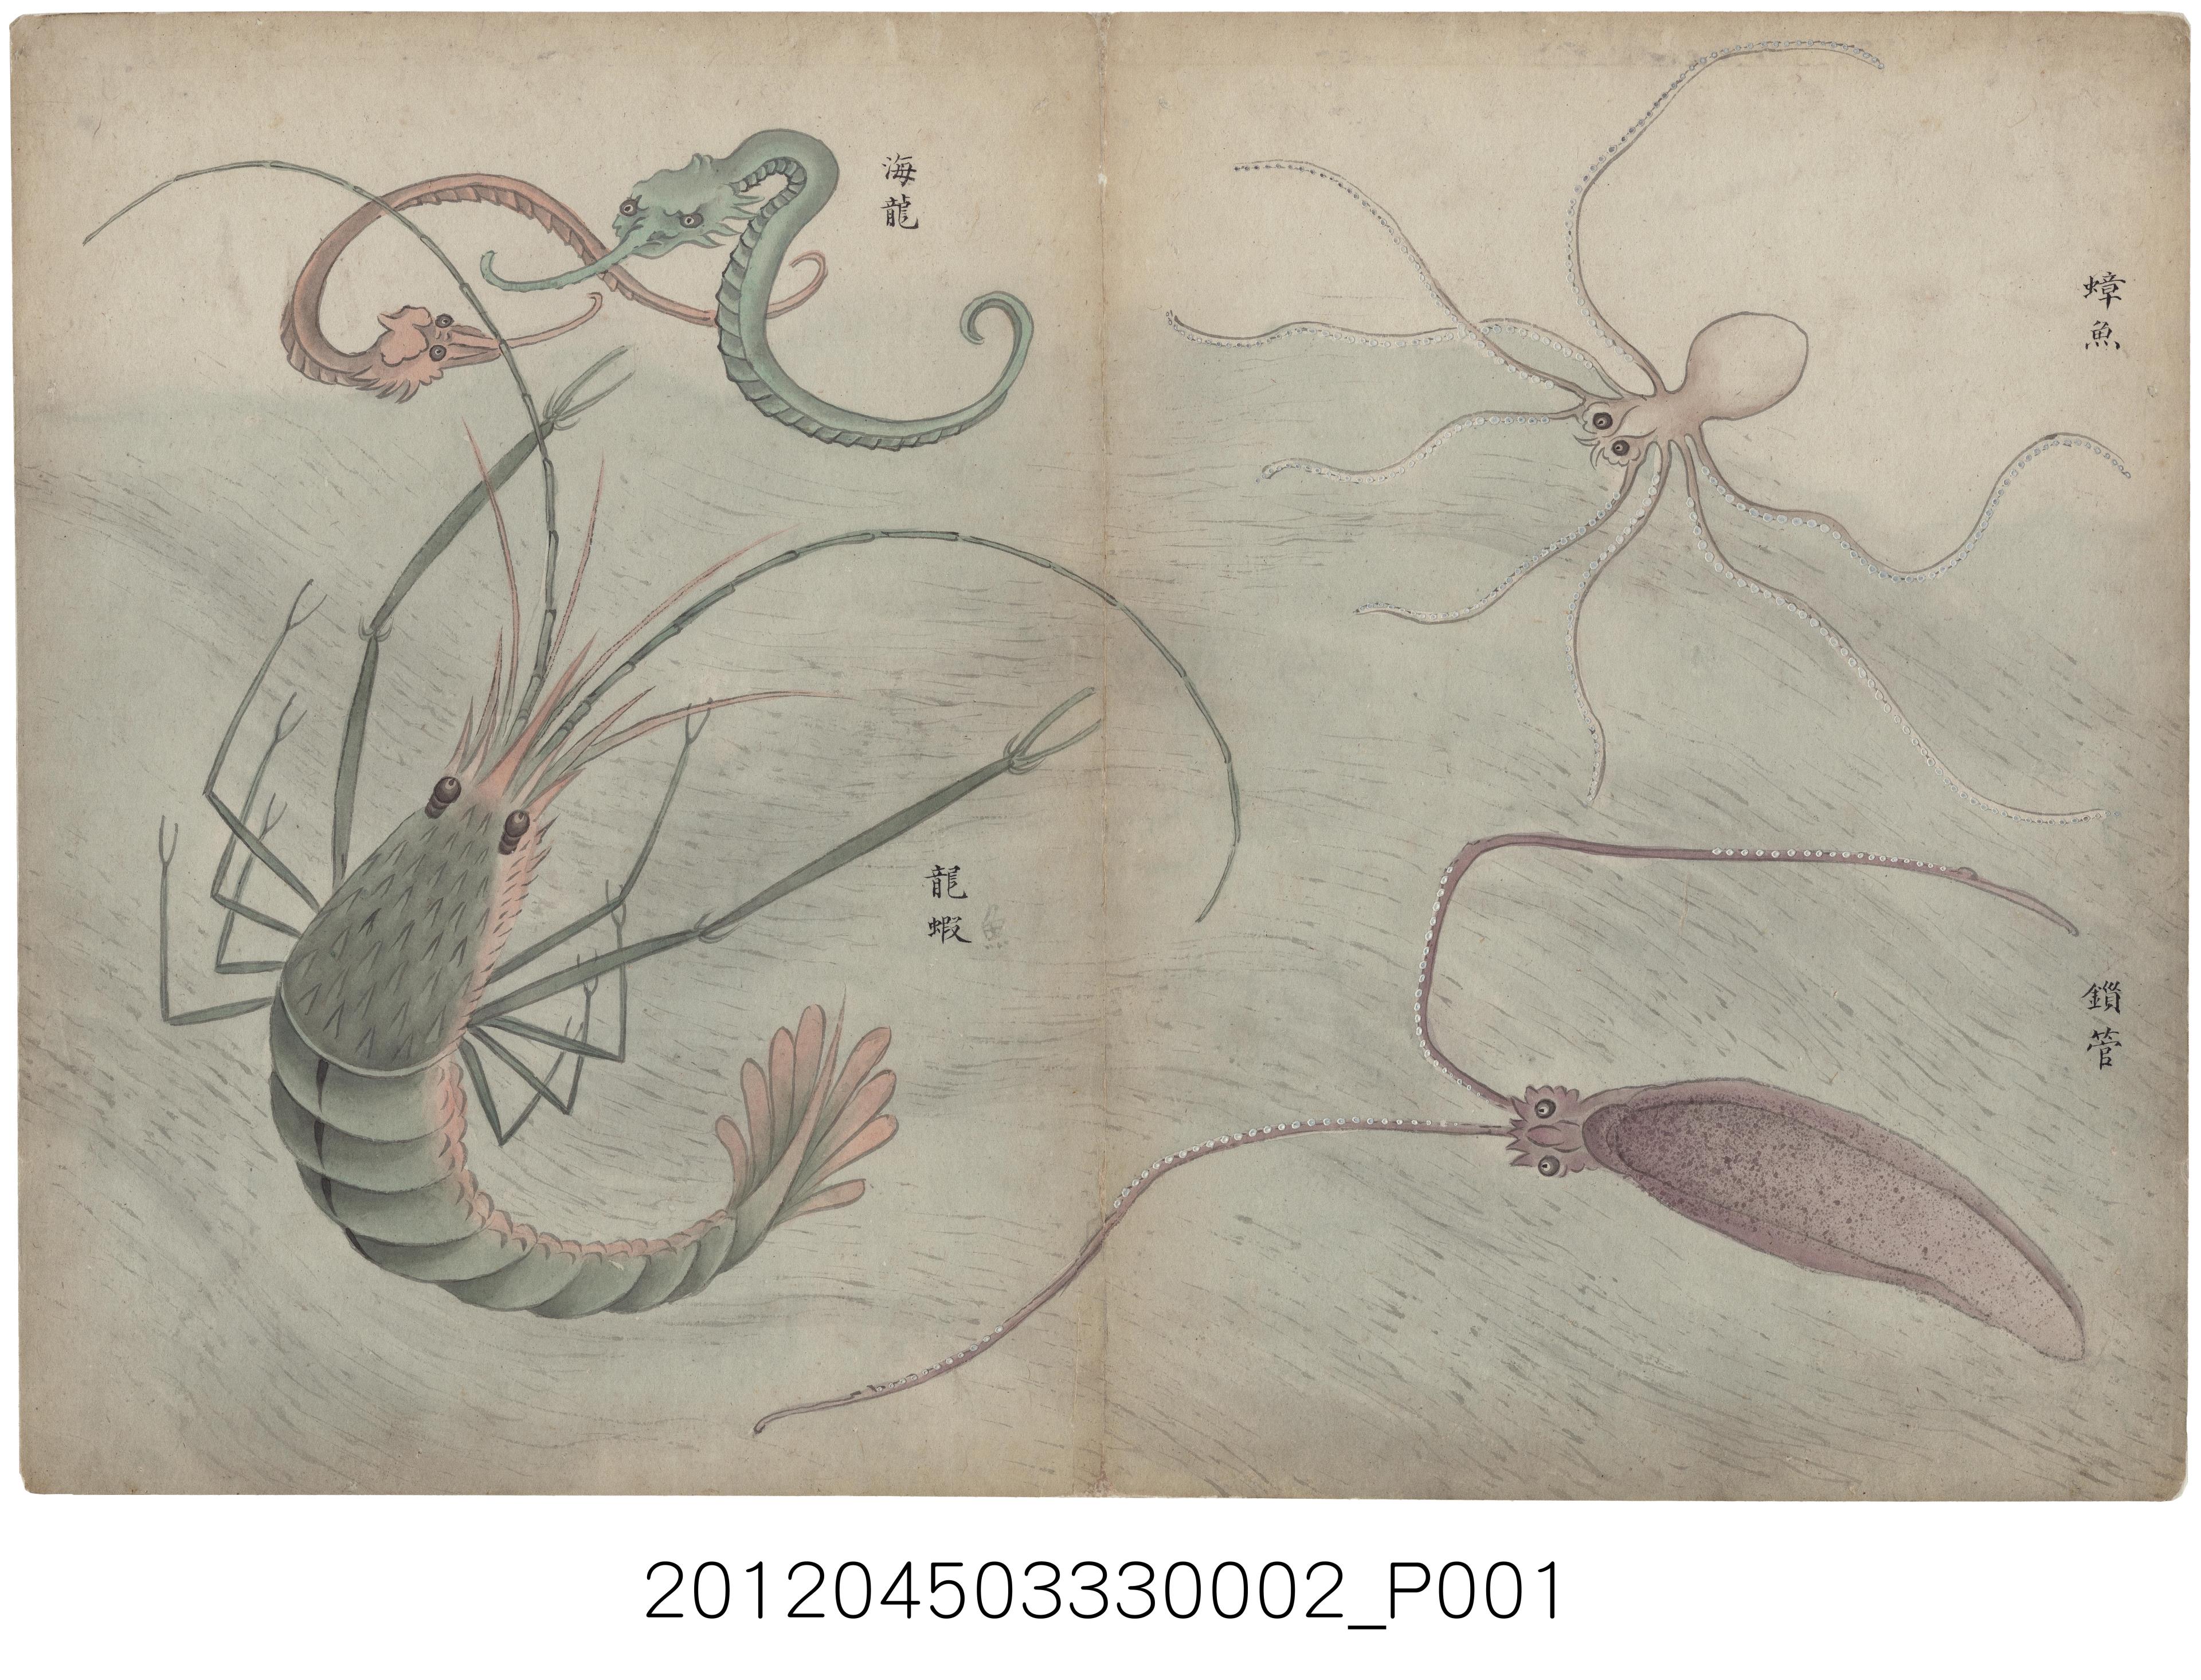 臺灣番社風俗圖之一〈蟑魚、海龍、錙管、龍蝦〉  (共1張)